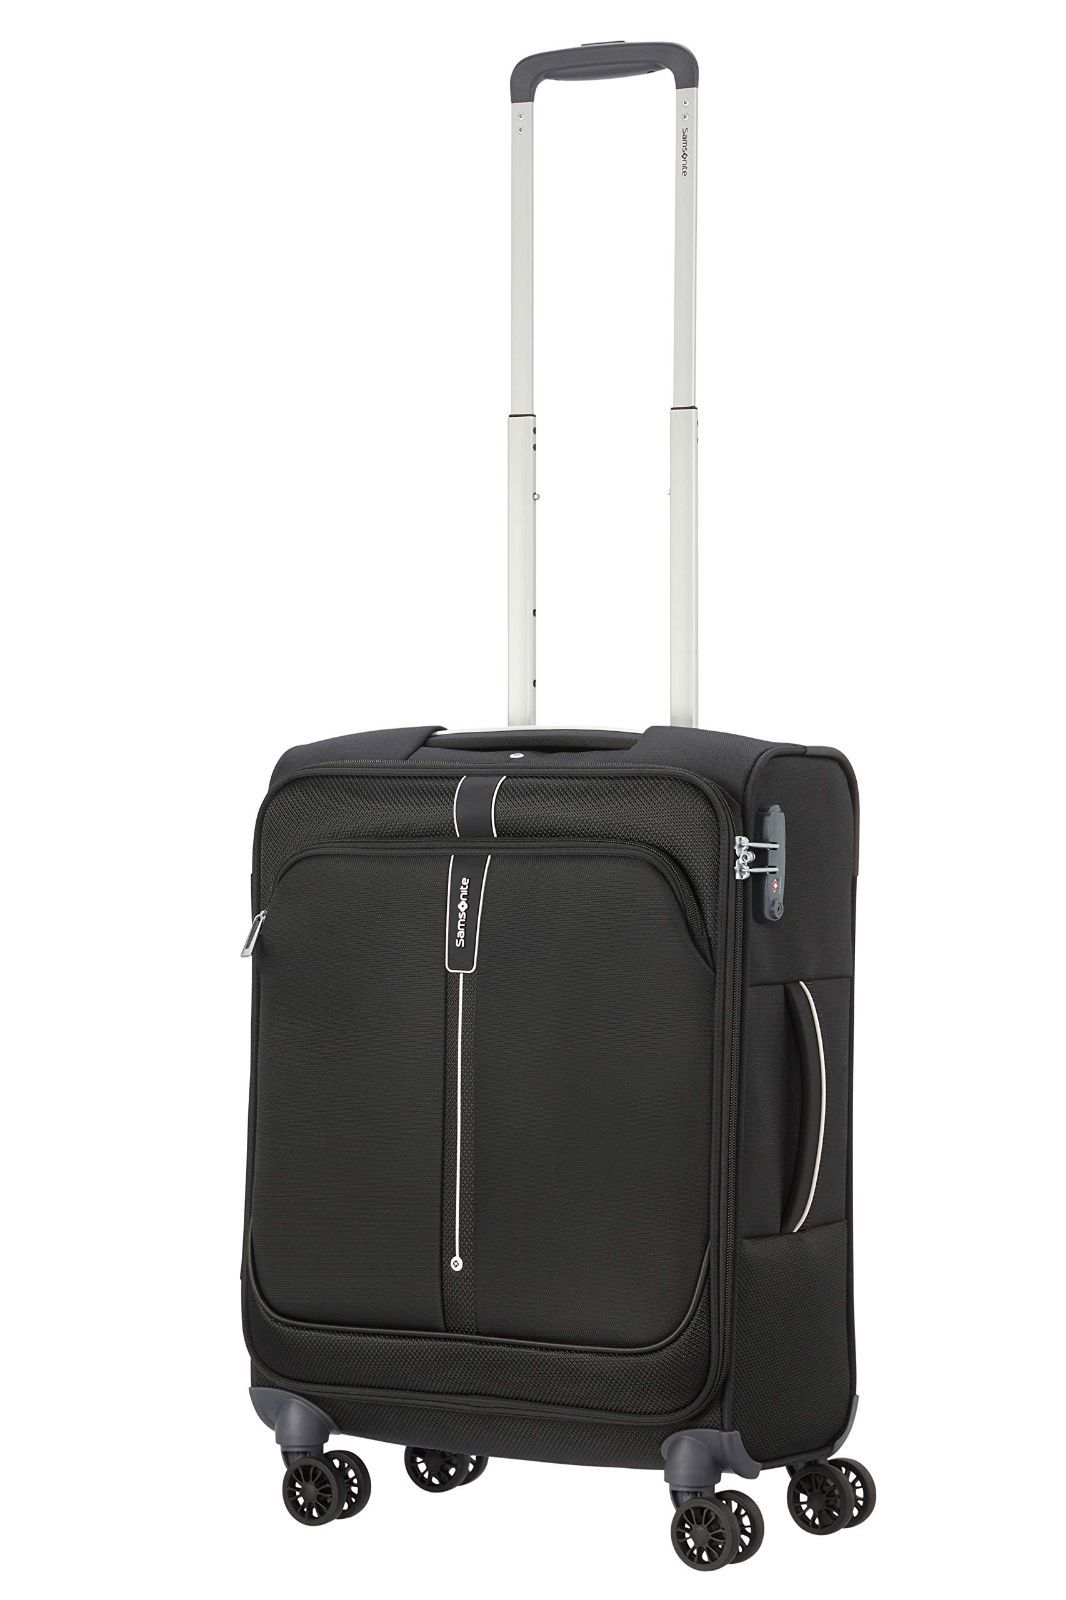 おしゃれ [サムソナイト] スーツケース キャリーケース ポップソーダ POPSODA スピナー55/20 機内持ち込み可 55 cm 2.3kg  ブラッ